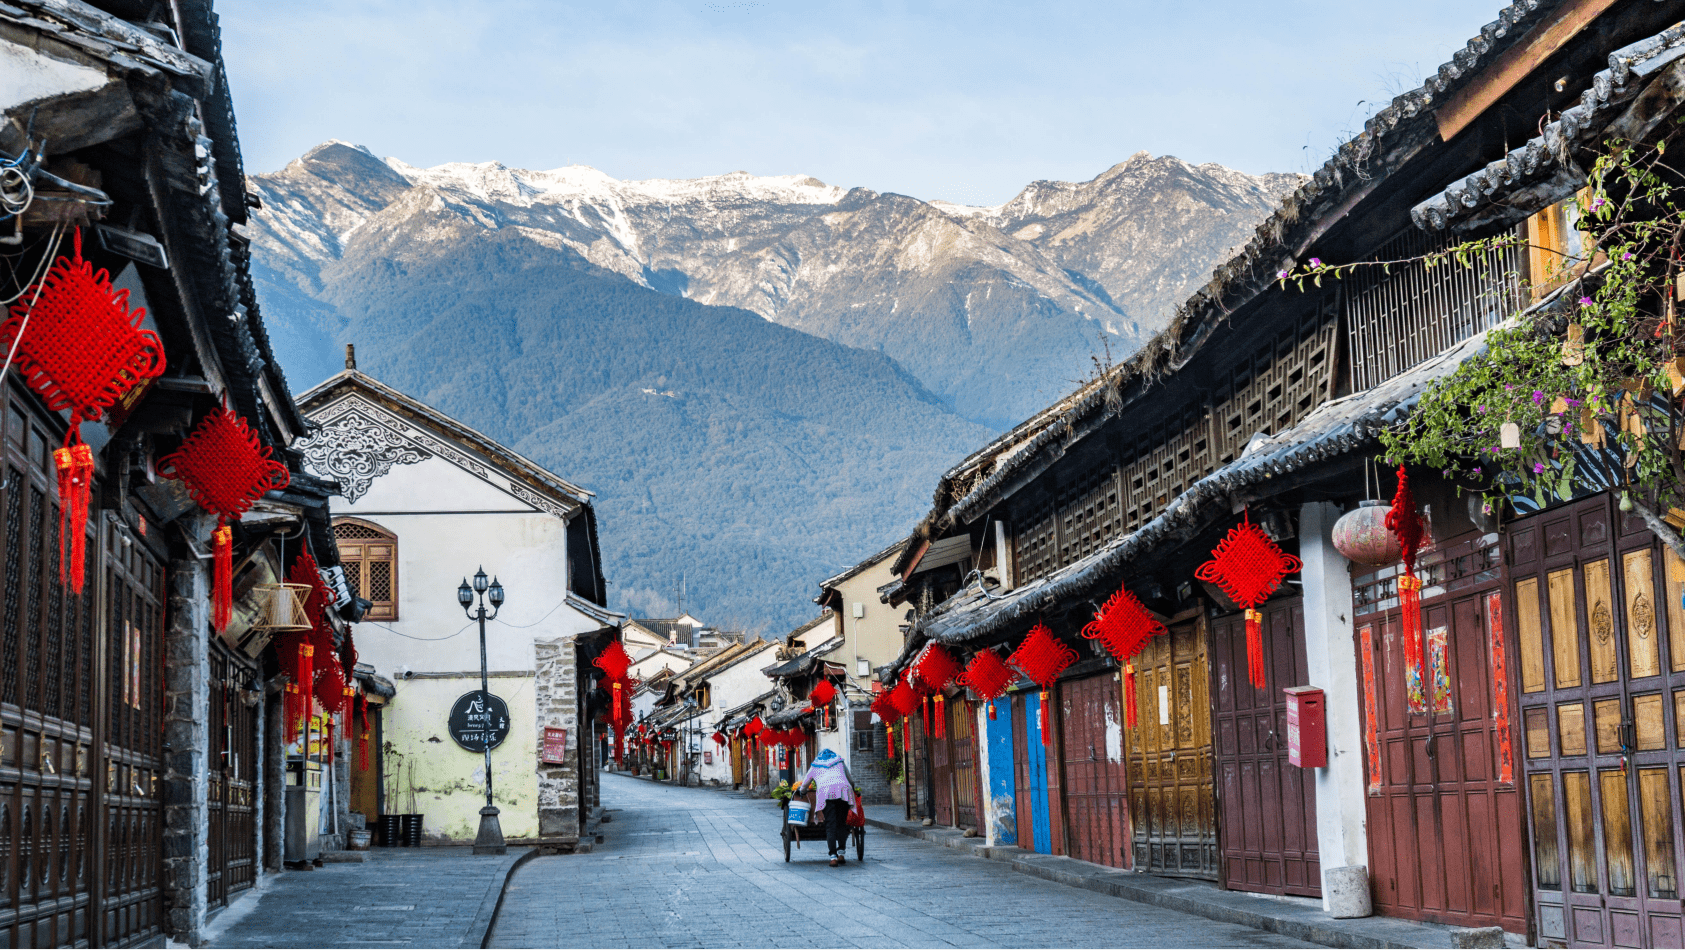 云南唯一 大理古城入选2020年国家级旅游度假区